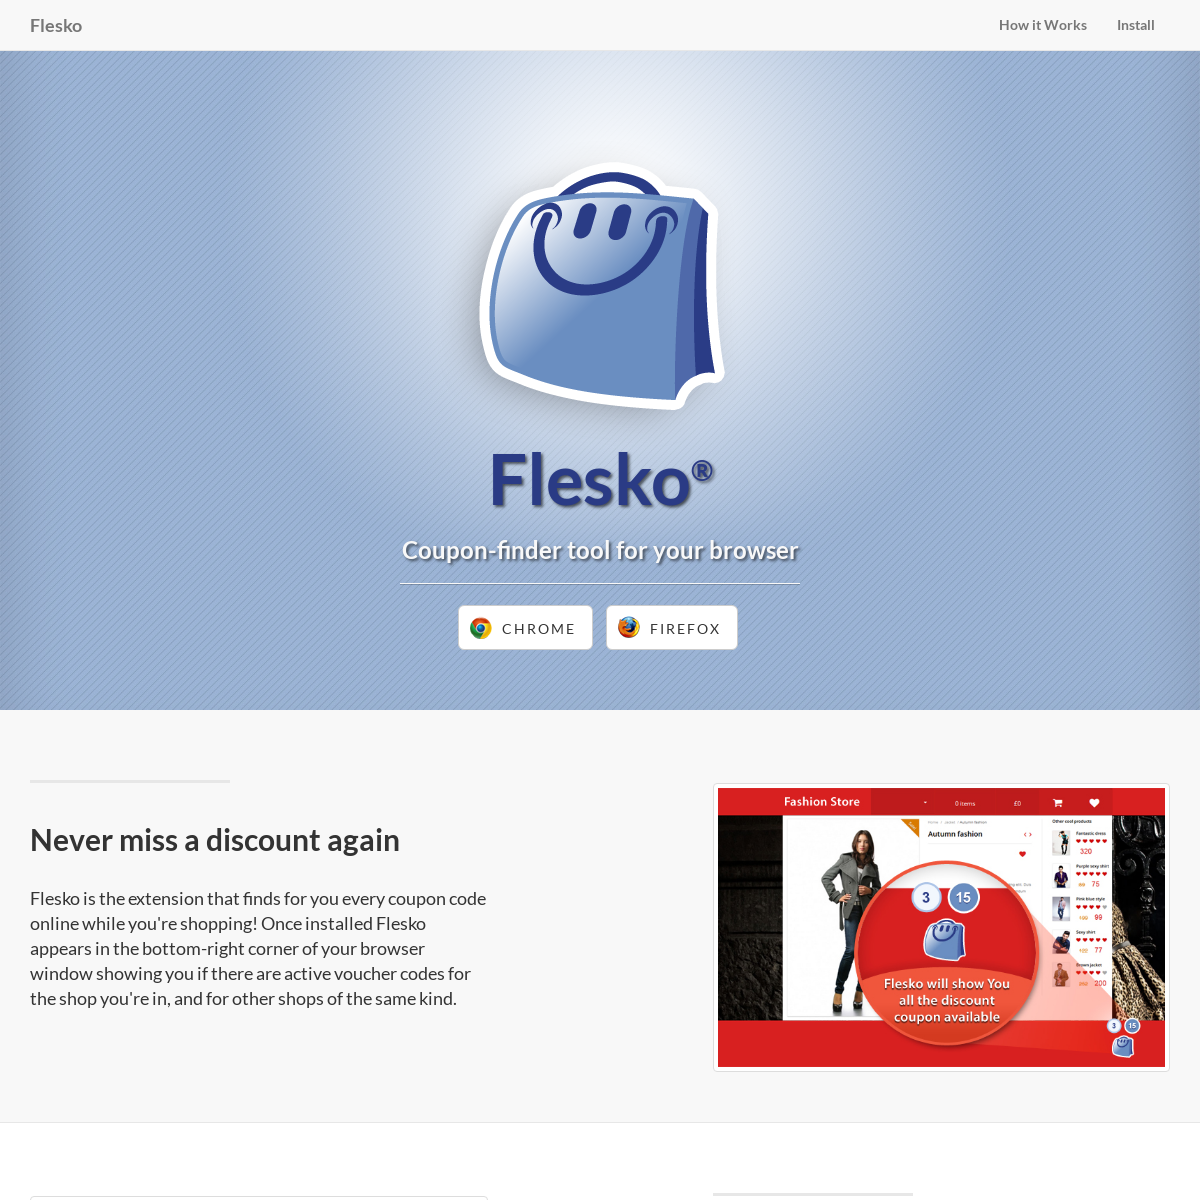 A complete backup of flesko.com